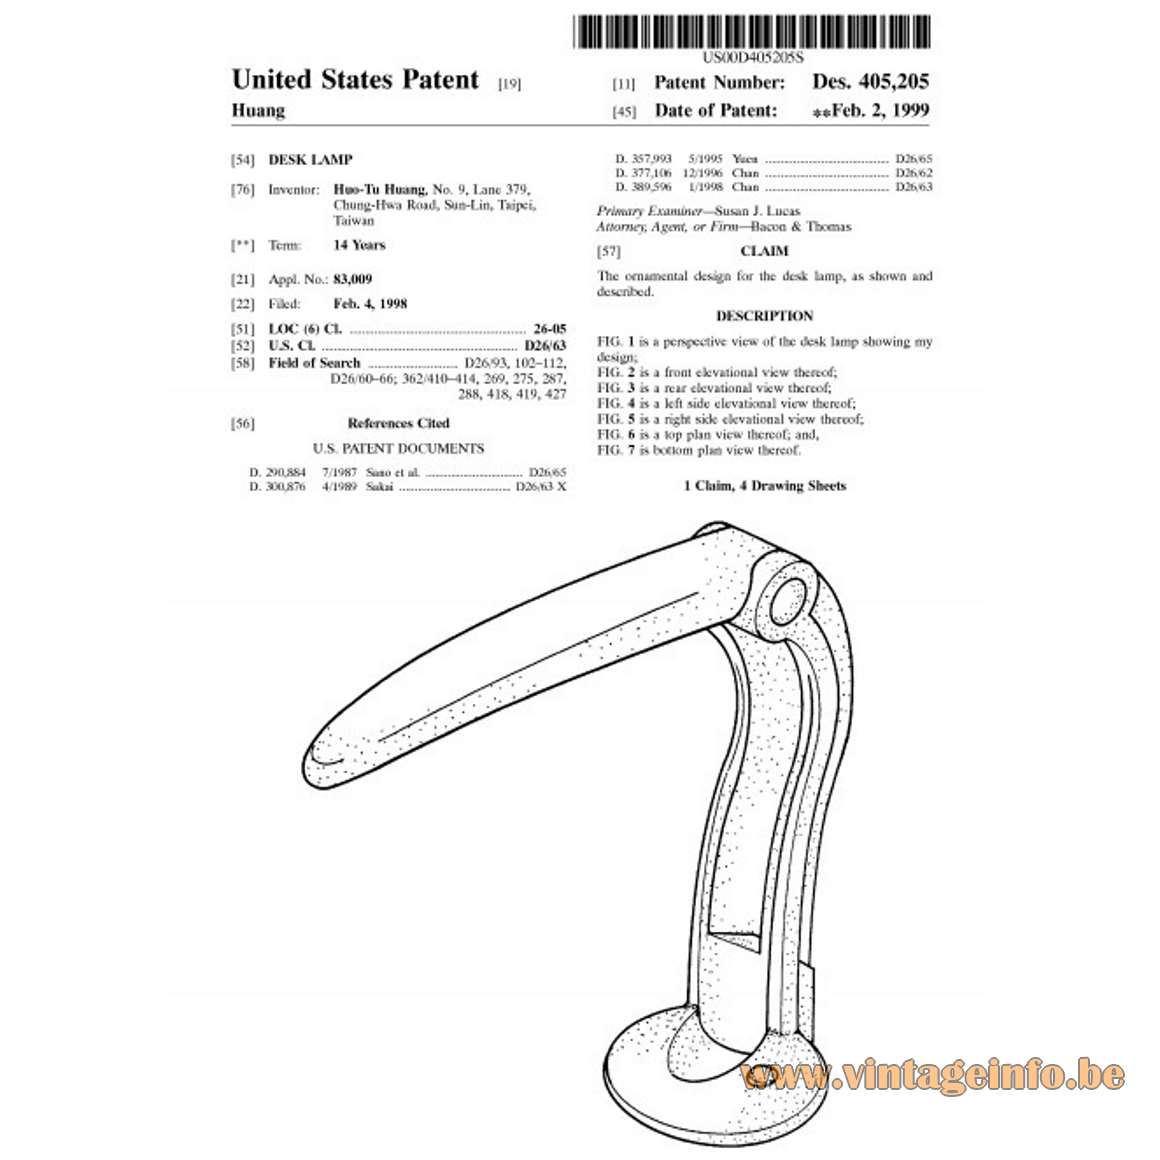 Huangslite Toucan Desk Lamp - Patent